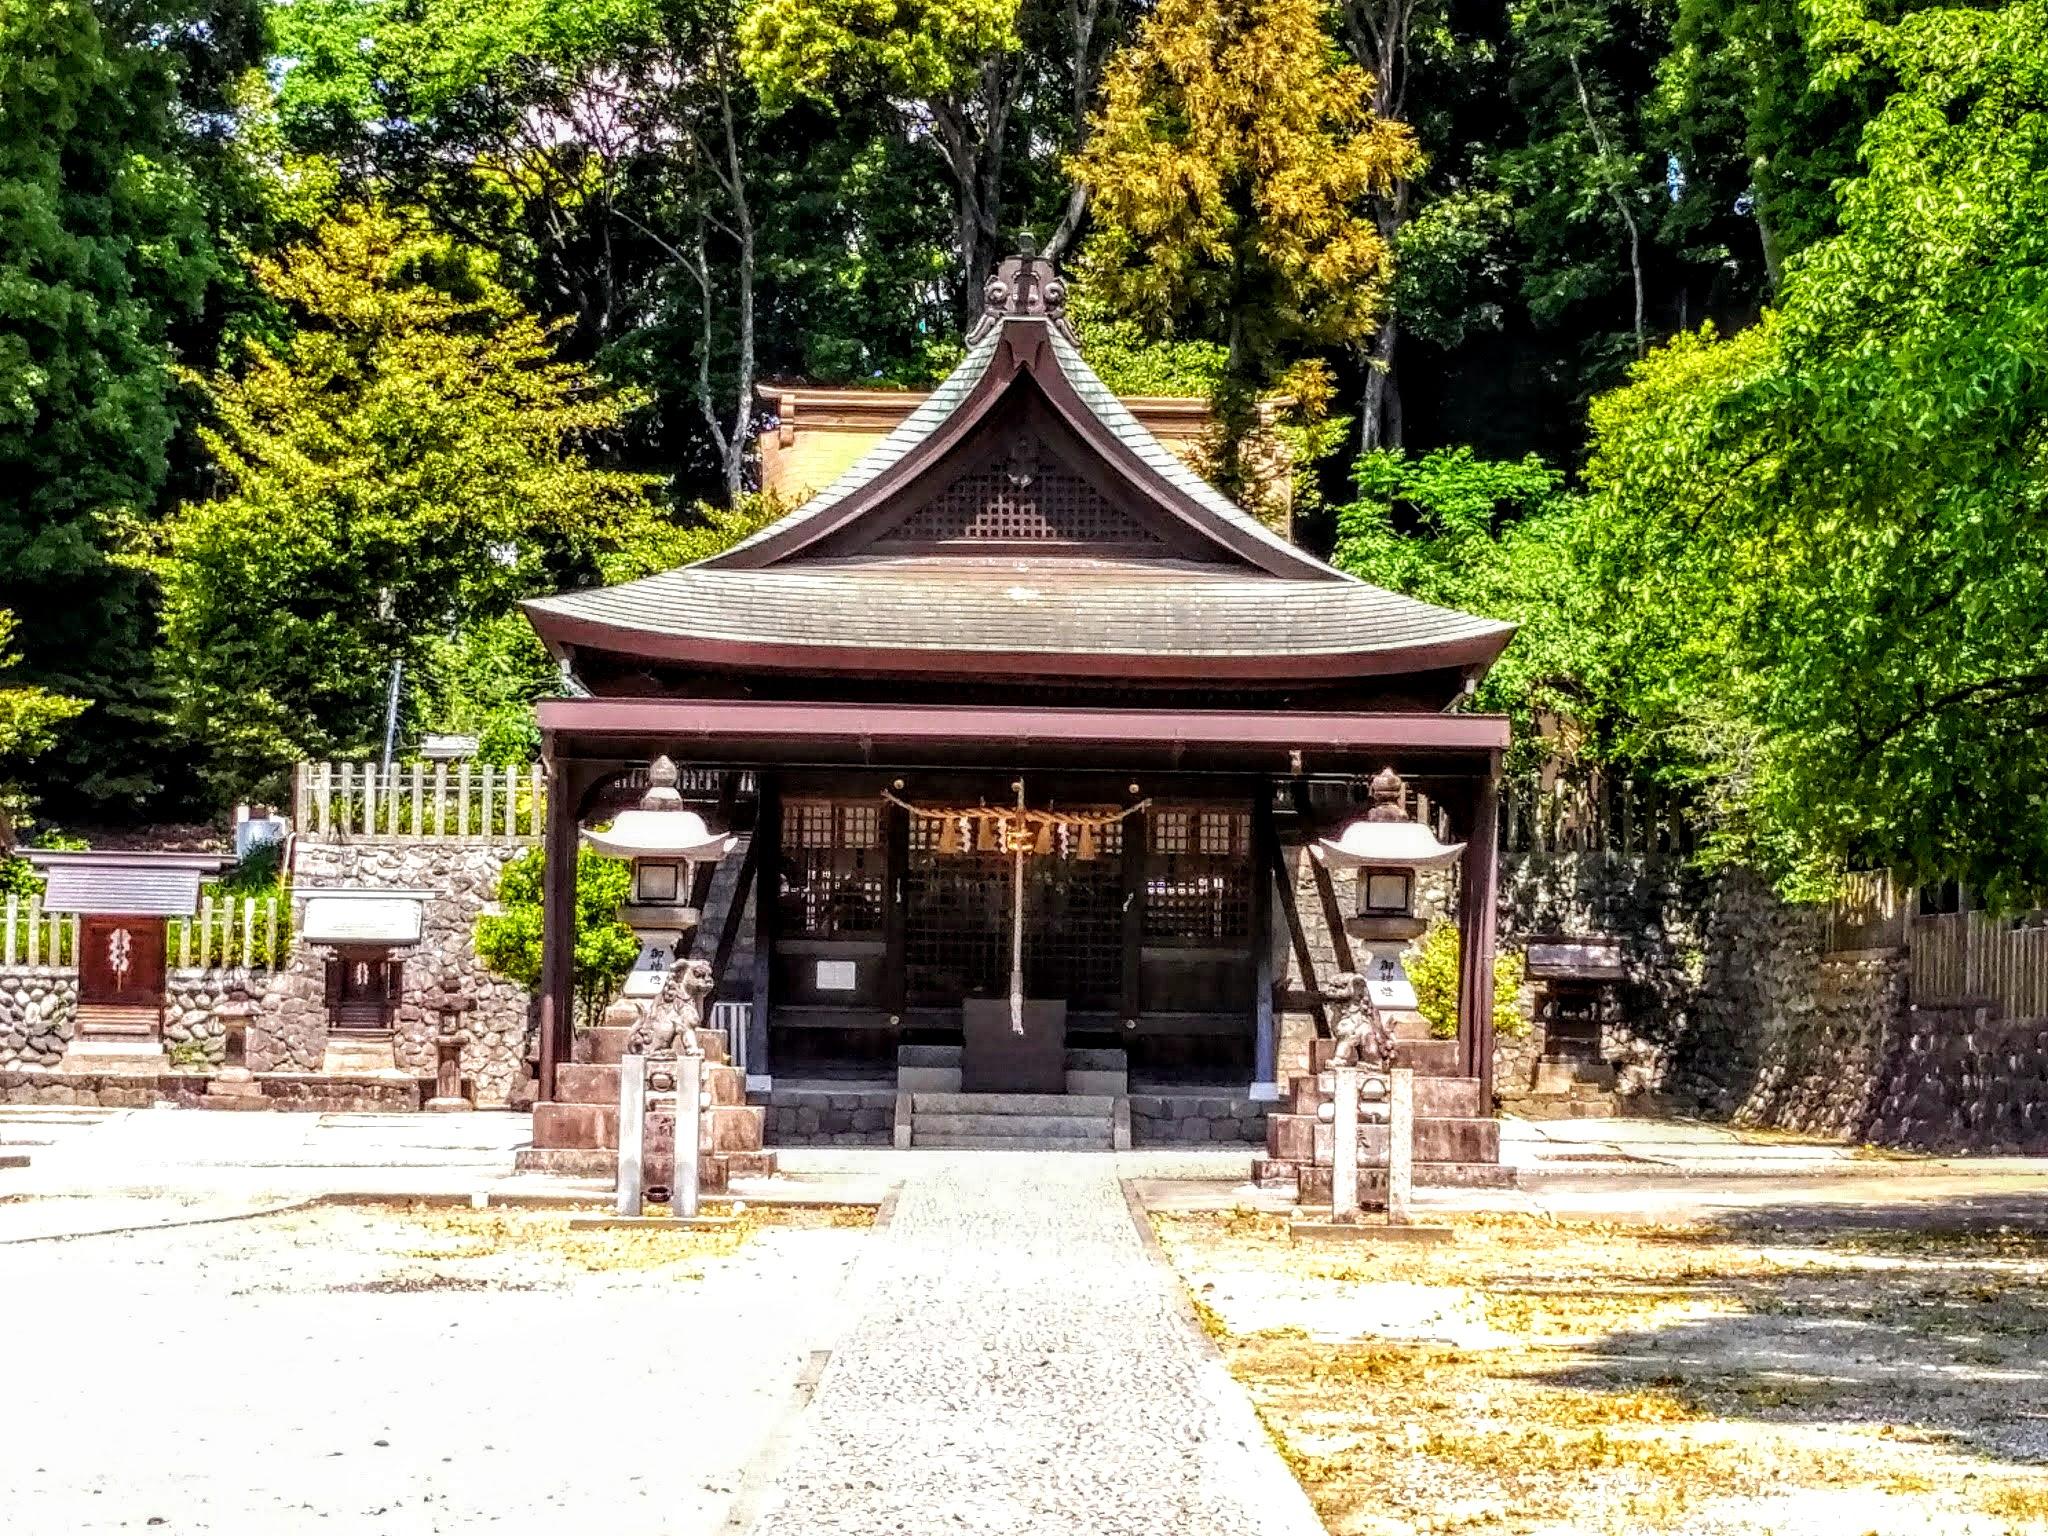 船津神社 愛知県名和駅 の投稿 1回目 東海市で1 2を争うぐらい神域の広い神社さんです ホトカミ